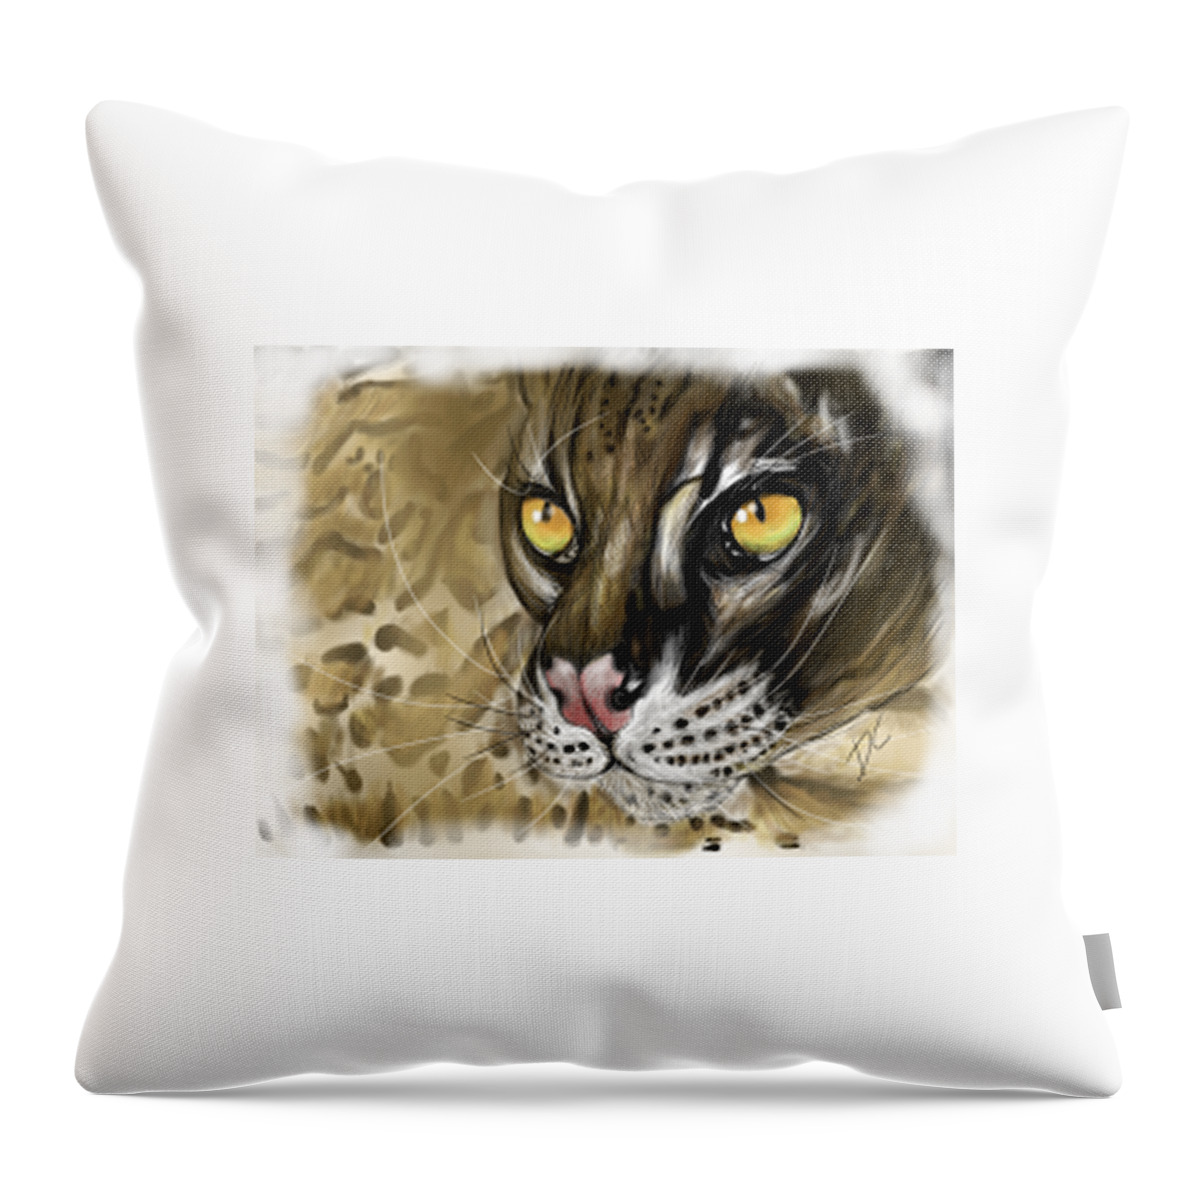 Feline Throw Pillow featuring the digital art Ocelot by Darren Cannell